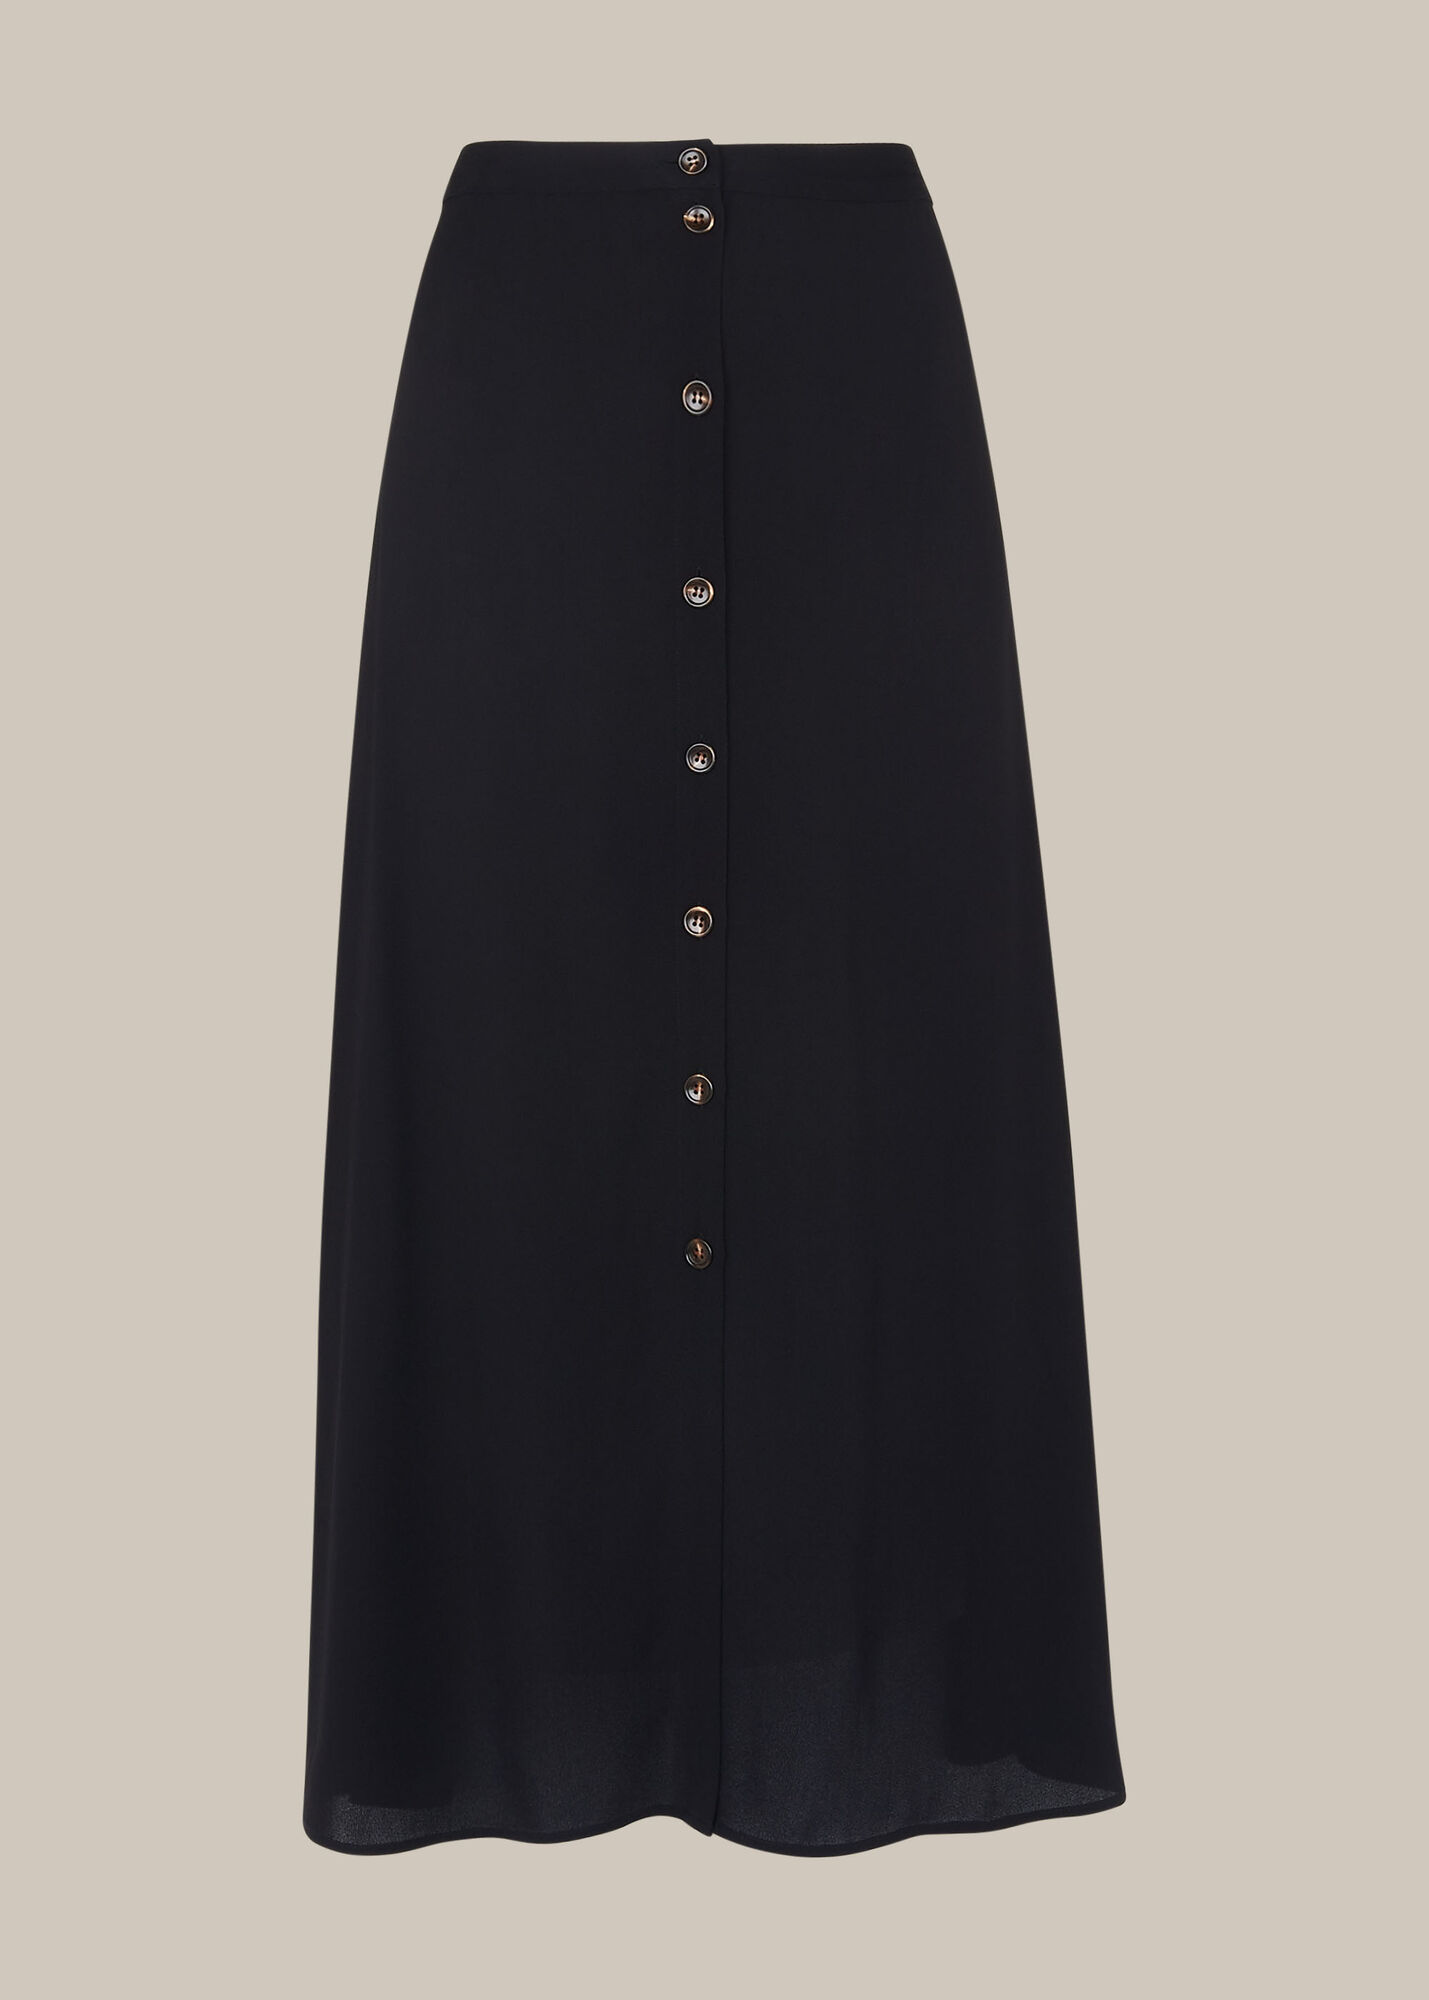 Black Button Front Skirt | WHISTLES | Whistles UK